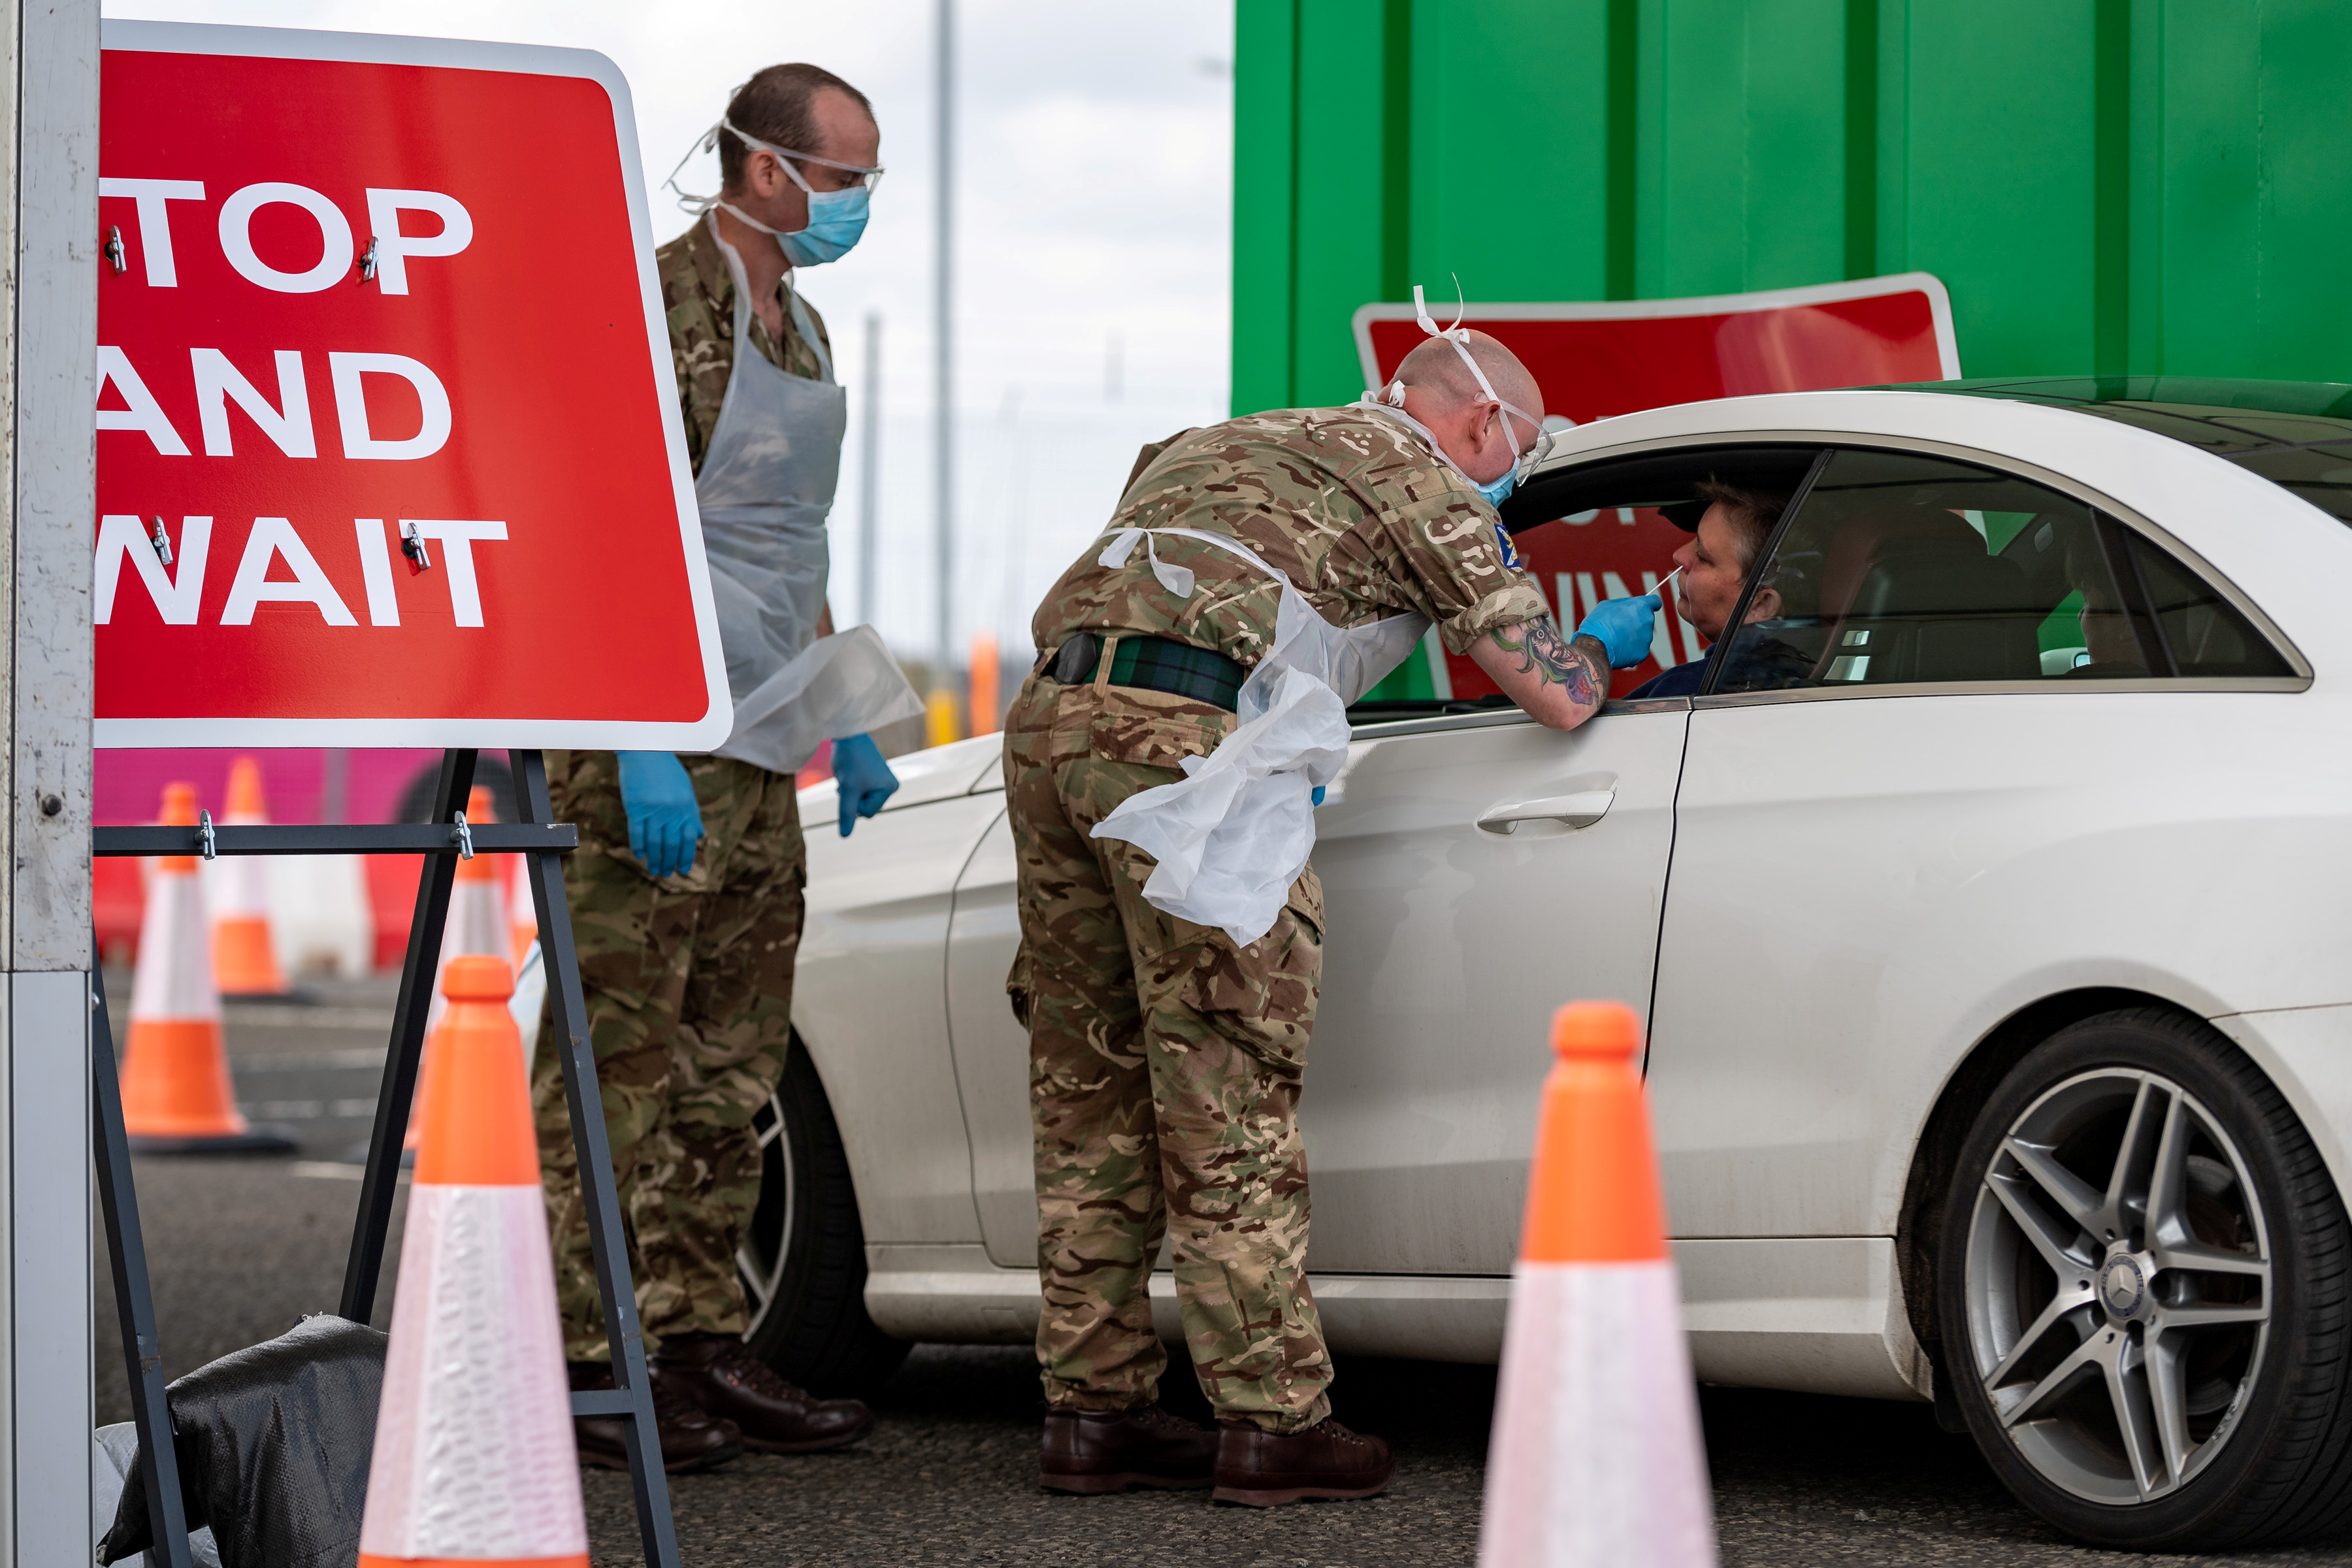 Soldados realizan testeos a personas en el aeropuerto de Glasgow (Cpl Nathan Tanuku/CROWN COPYRIGHT 2020/Handout via REUTERS) 